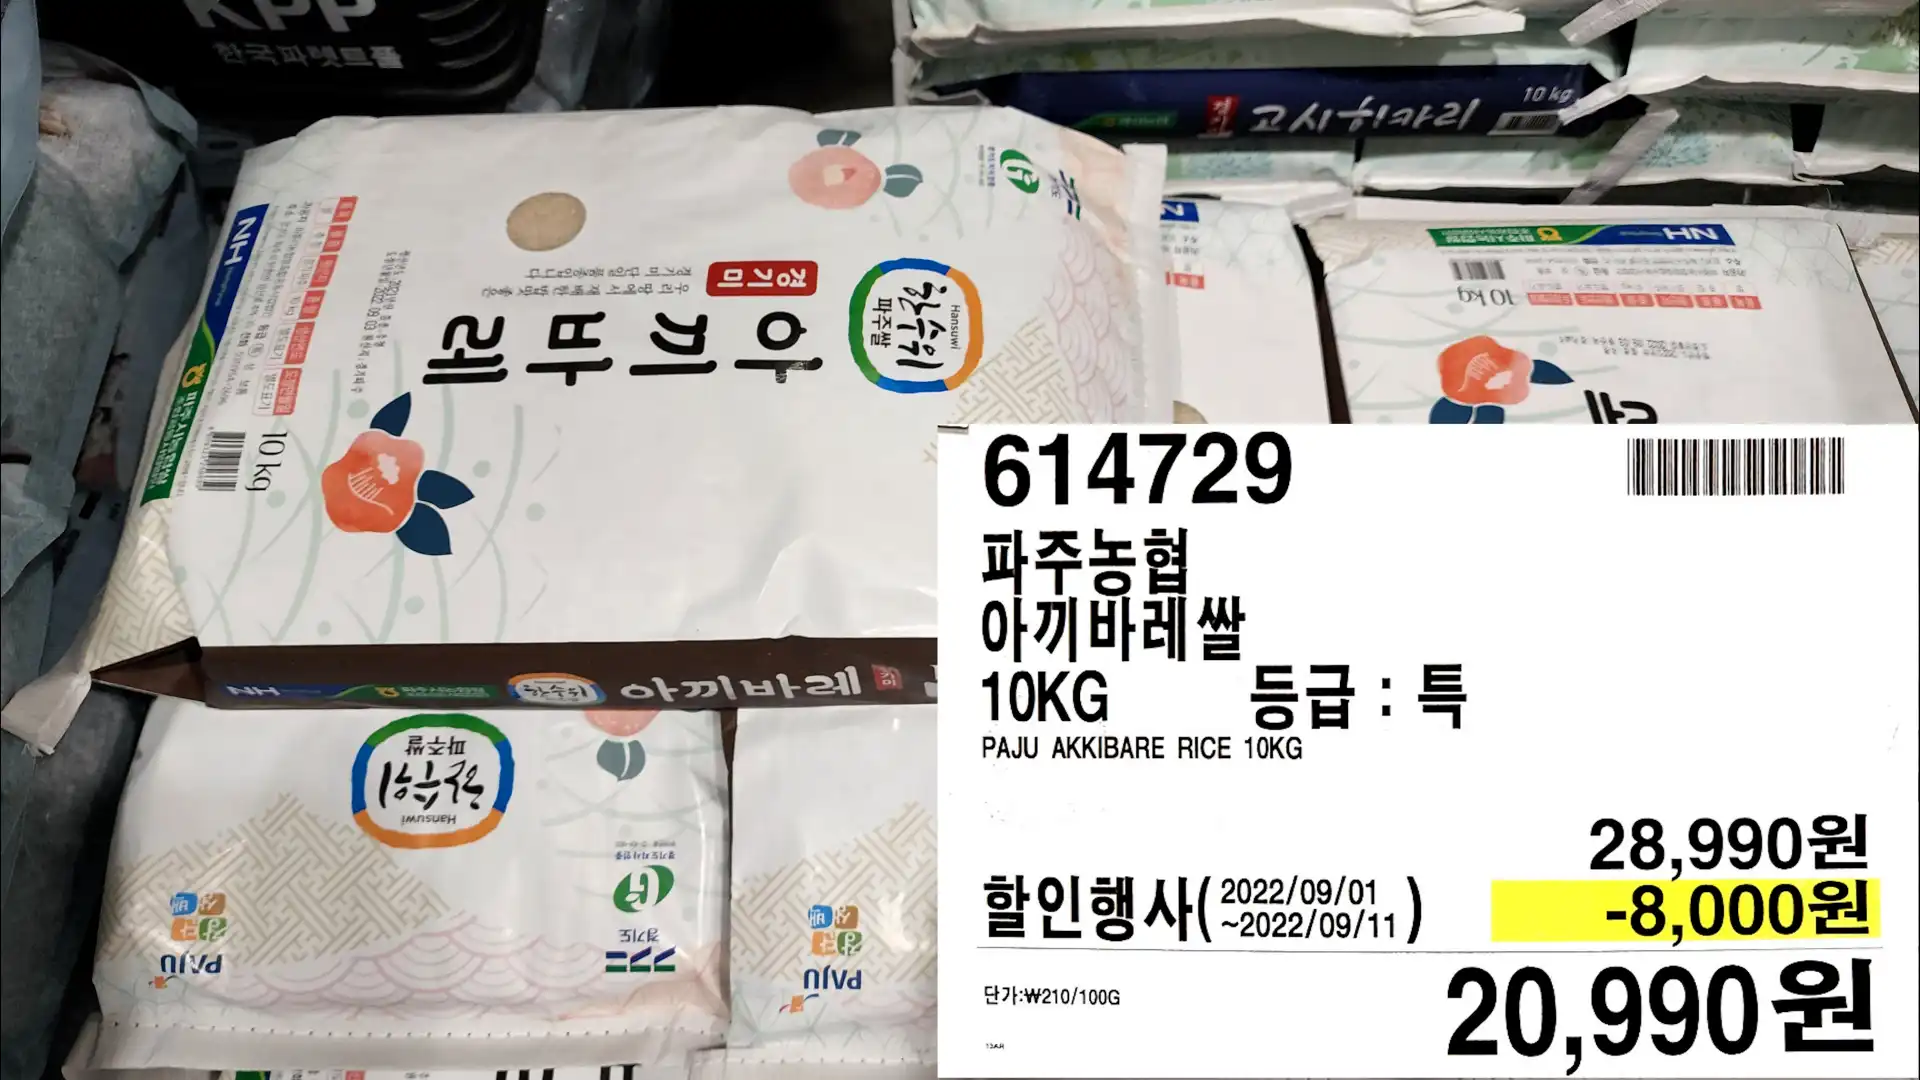 파주농협
아끼바레쌀
10KG
등급 : 특
PAJU AKKIBARE RICE 10KG
20,990원